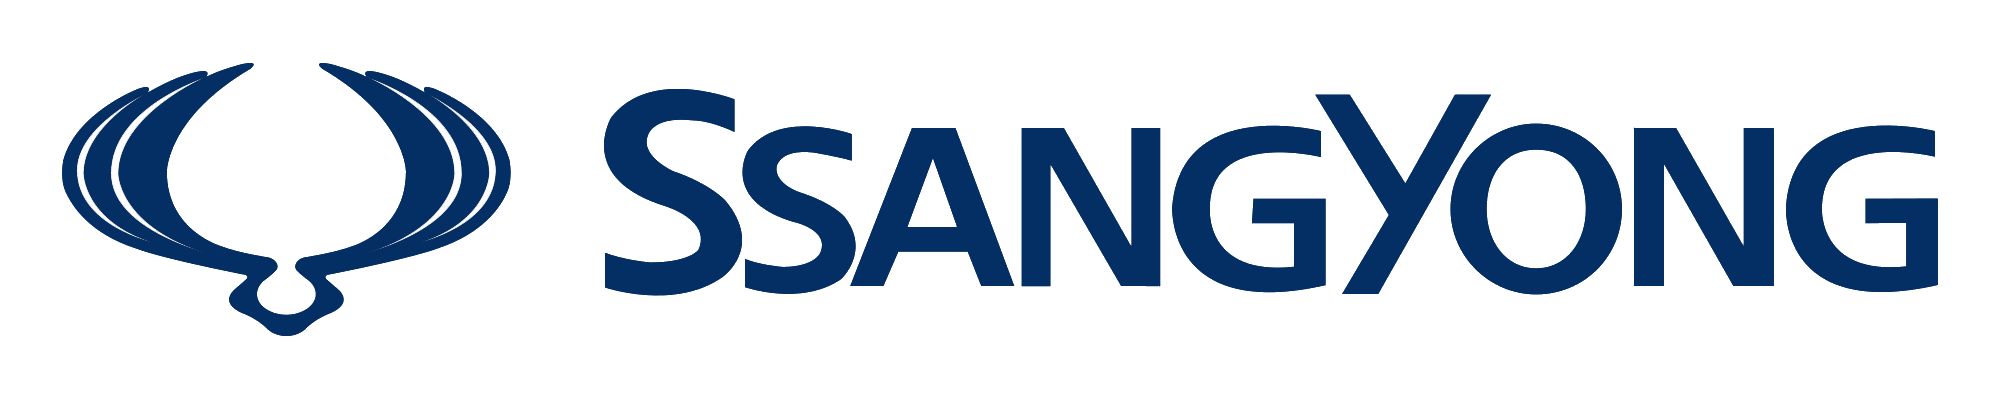 SsangYong-logo-2000x400.png